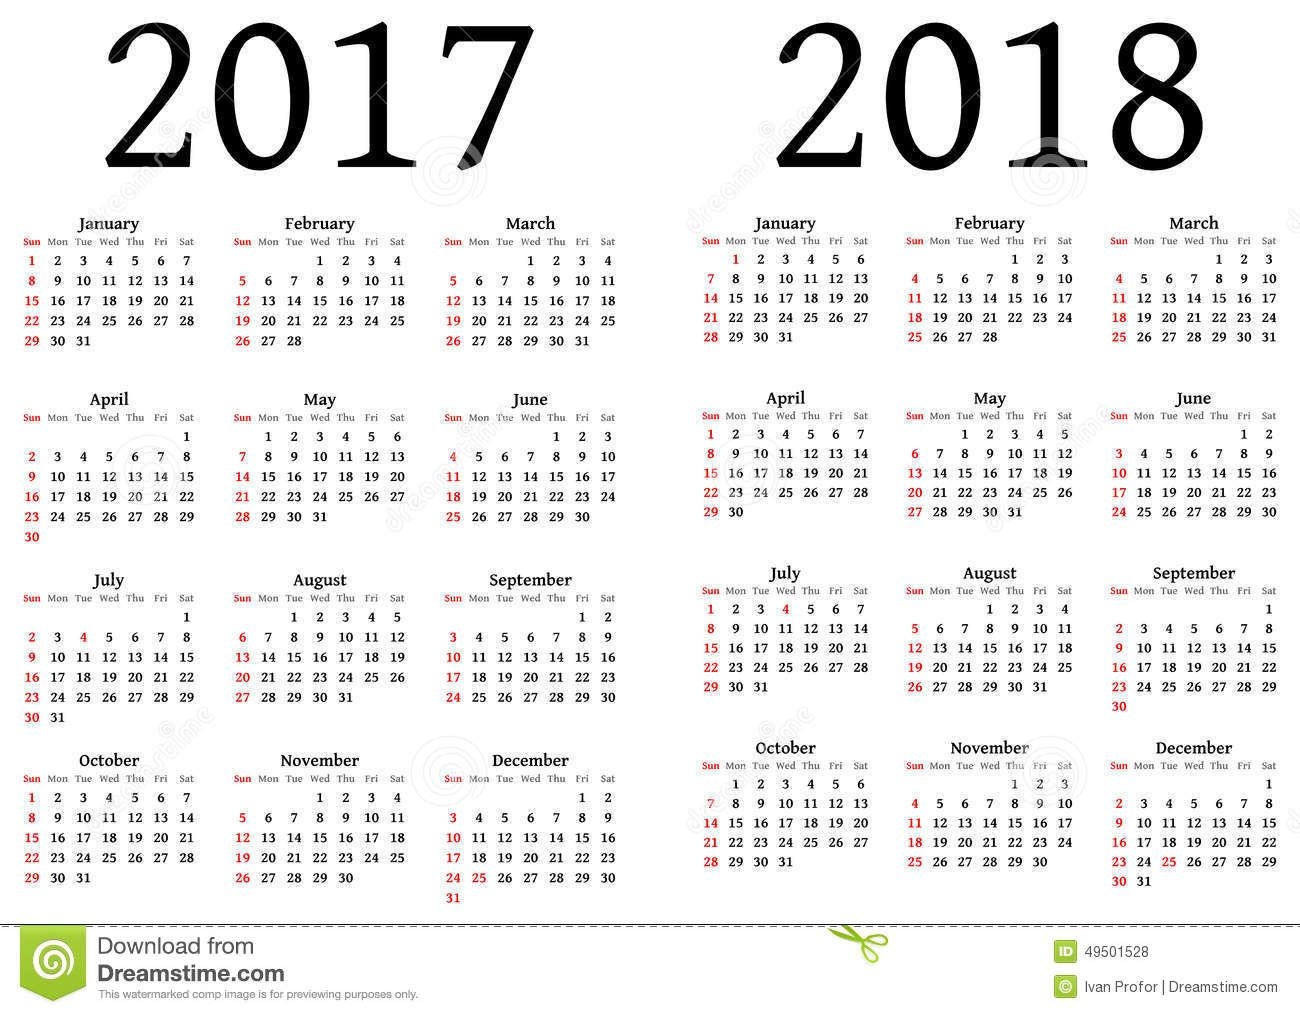 Calendar For 2017 And 2018 Stock Vector Image 49501528 Calendar Printables Free Printable Calendar Templates Printable Calendar Template - Free Printable Agenda 2017